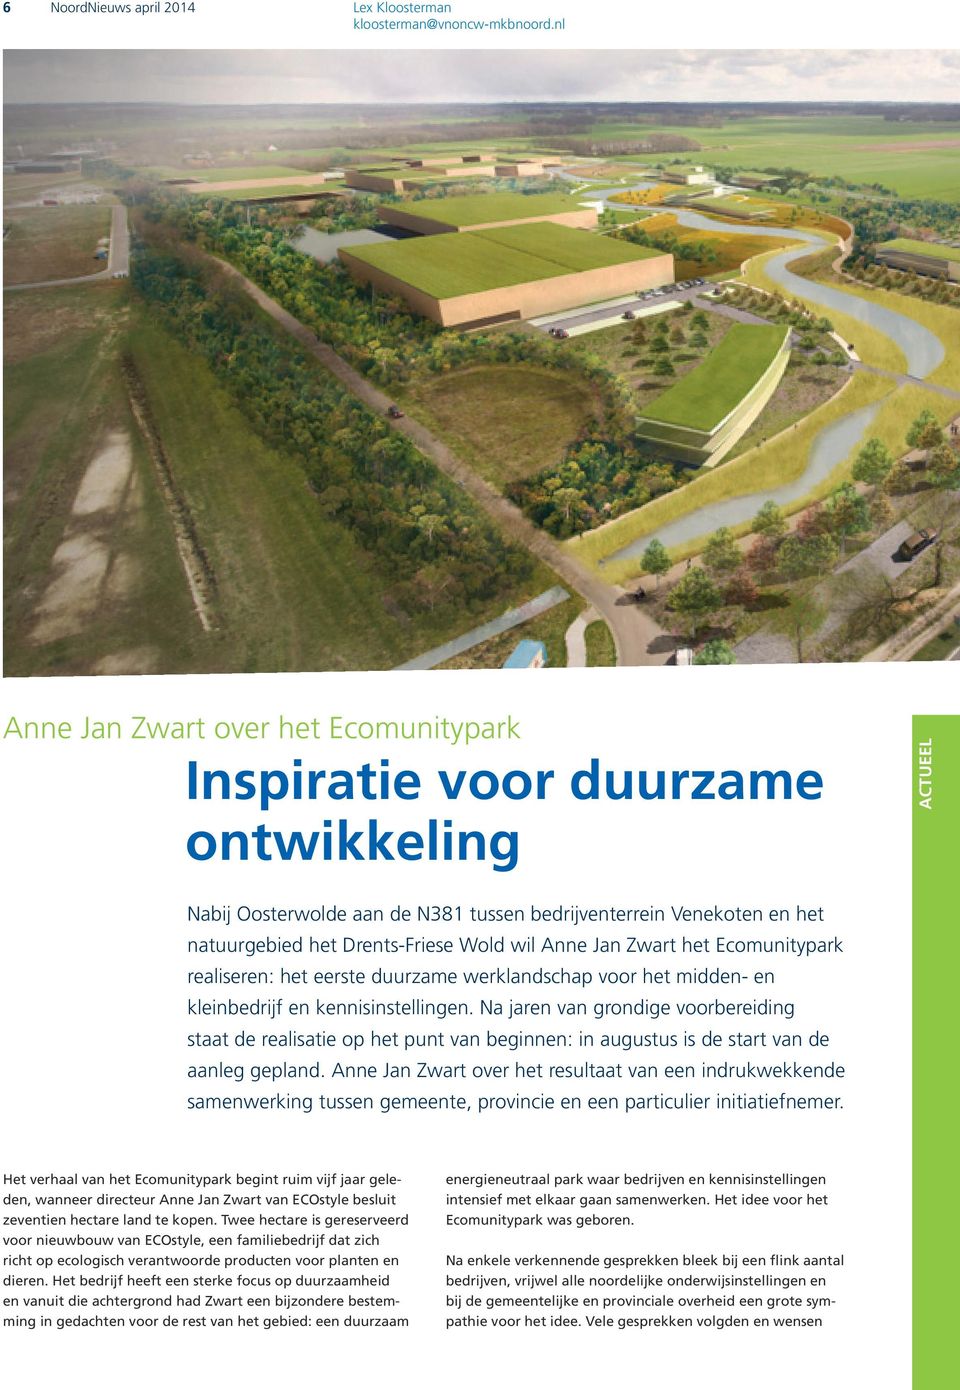 Anne Jan Zwart het Ecomunitypark realiseren: het eerste duurzame werklandschap voor het midden- en kleinbedrijf en kennisinstellingen.